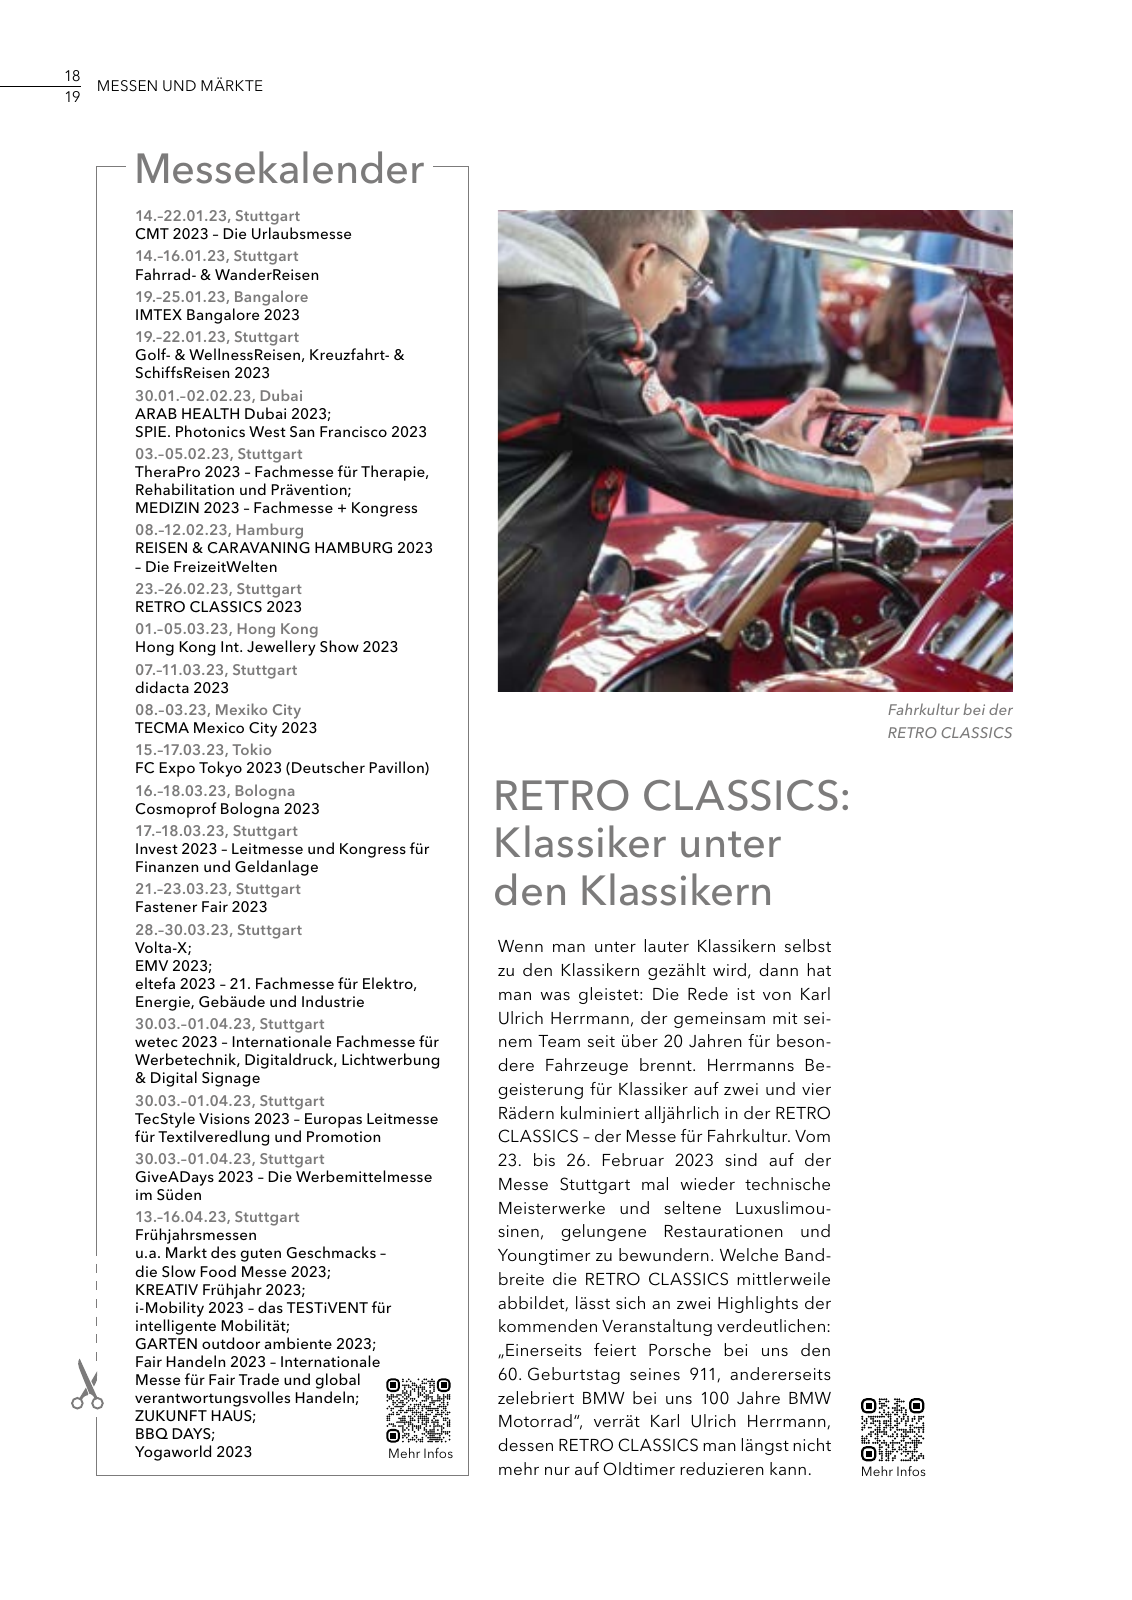 Vorschau MESSAGE - Das Magazin der Messe Stuttgart / Ausgabe 01 - 2023 Seite 18